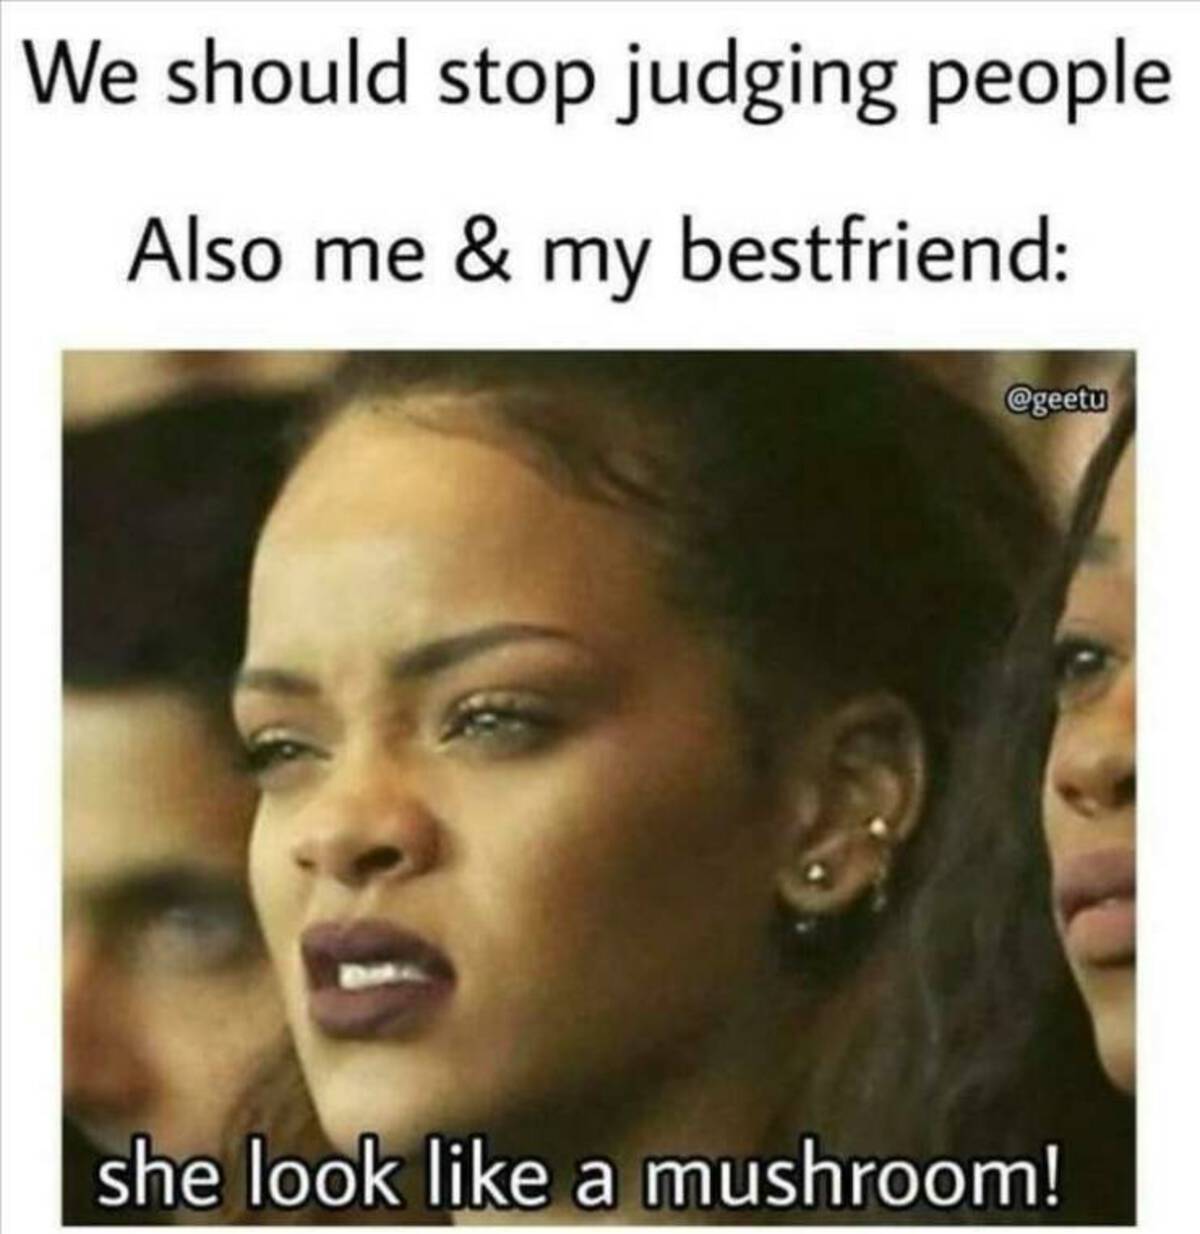 judging people meme - We should stop judging people Also me & my bestfriend she look a mushroom!